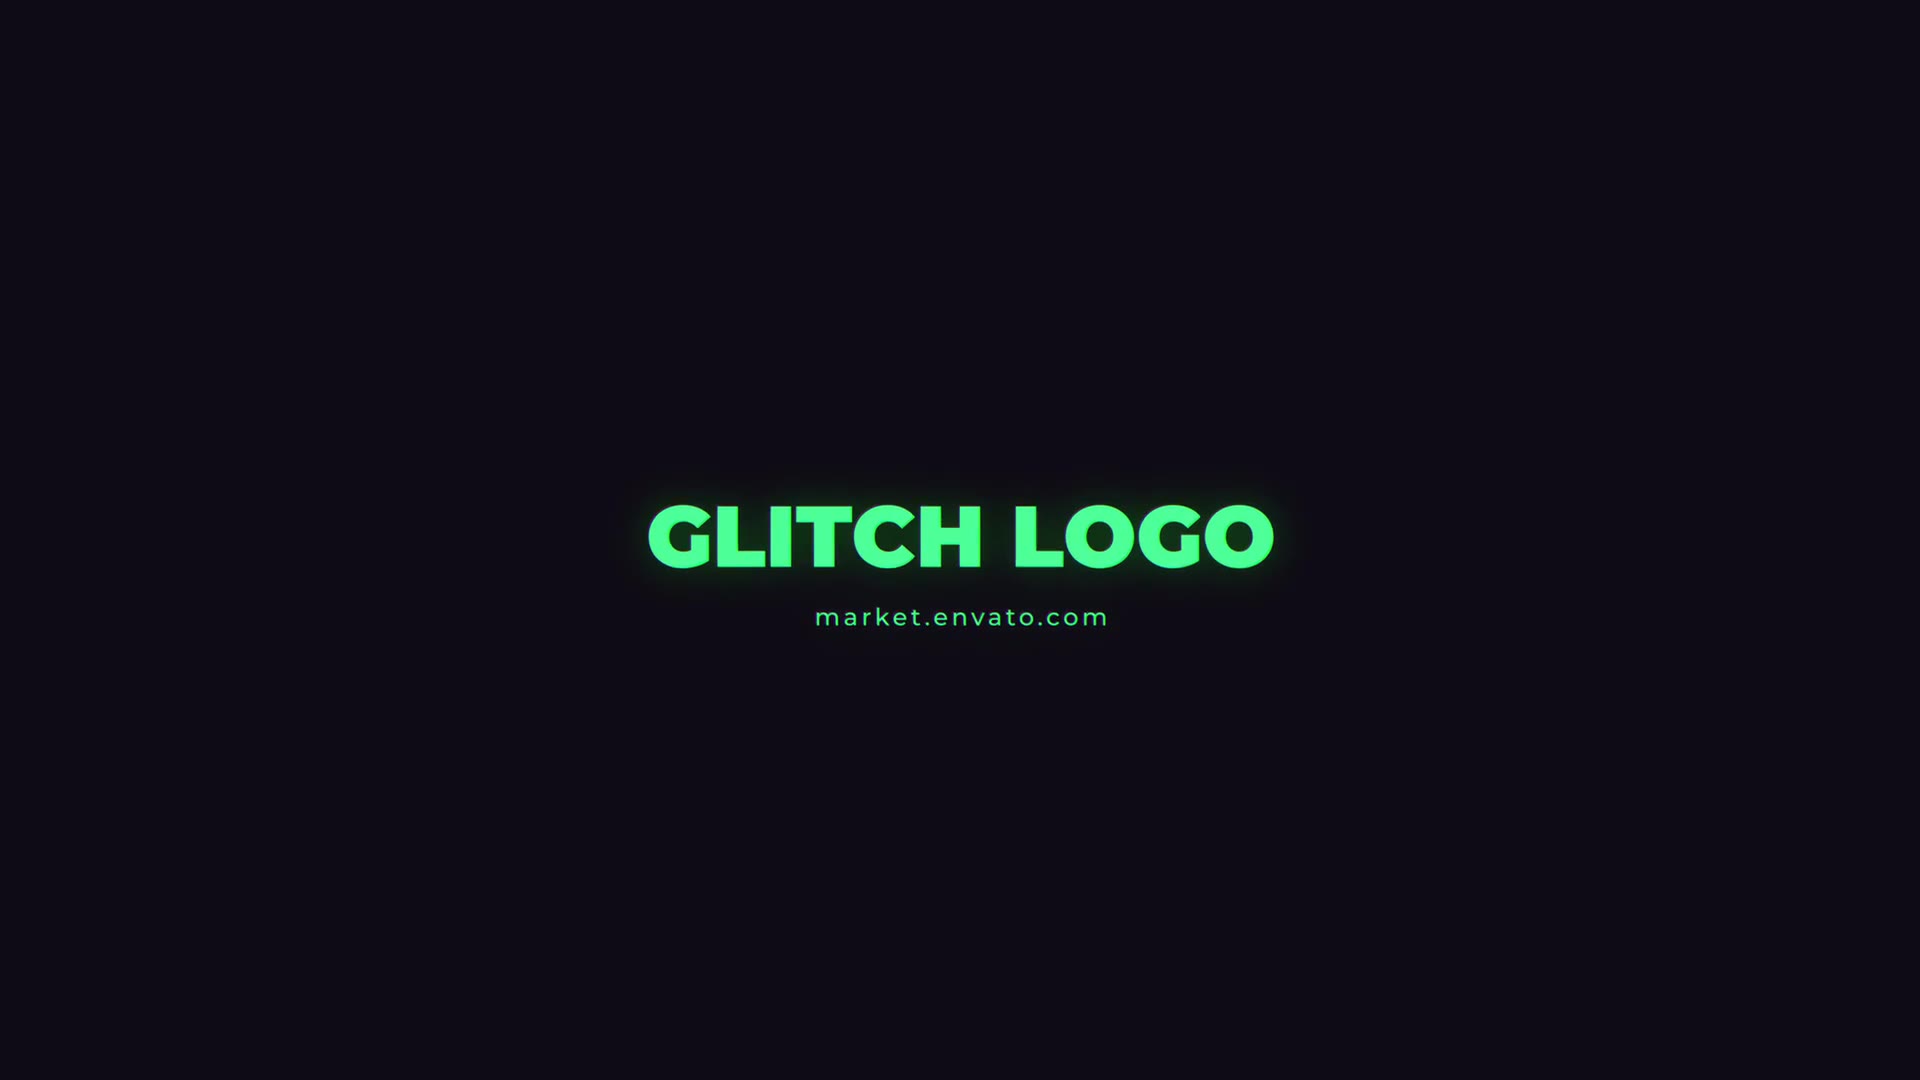 Glitch Logo Mogrt Videohive 26716653 Premiere Pro Image 6